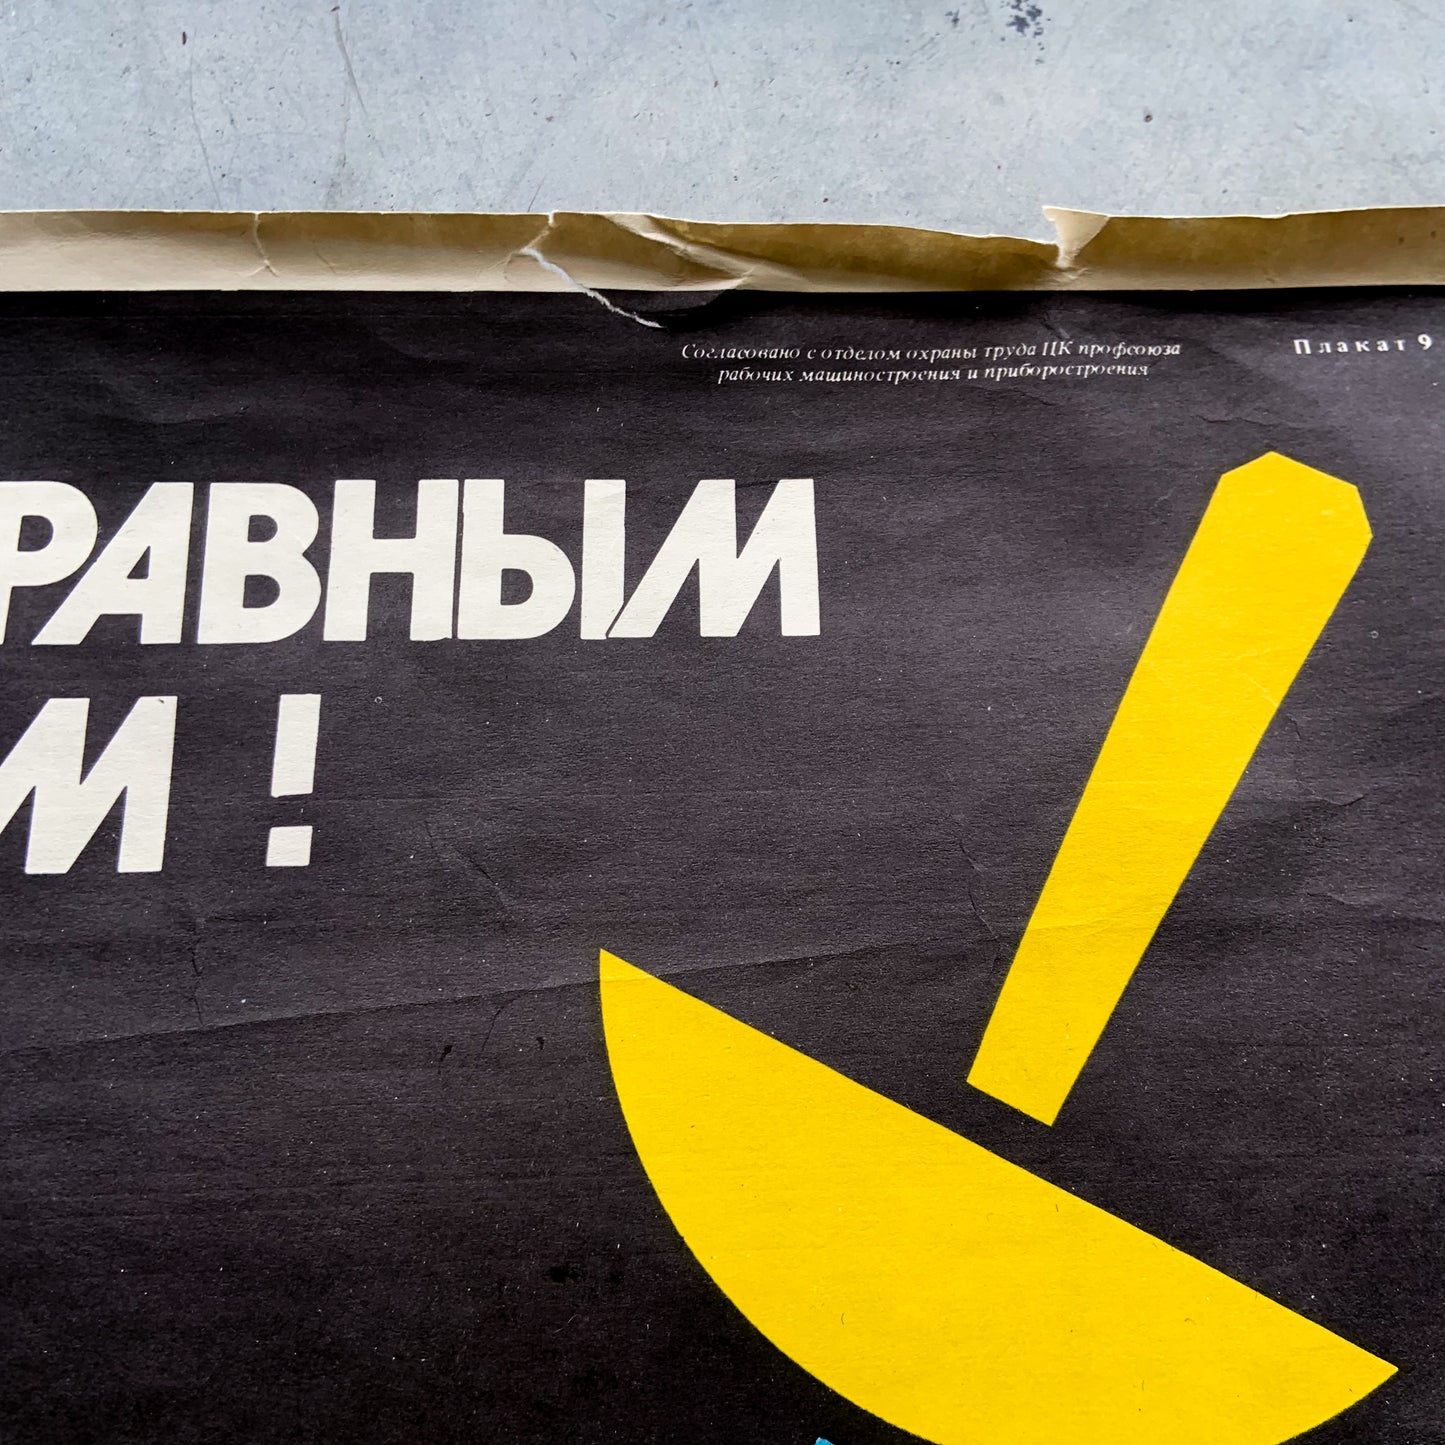 1990 Soviet Work Safety Poster #P1192 - 18" x 24"